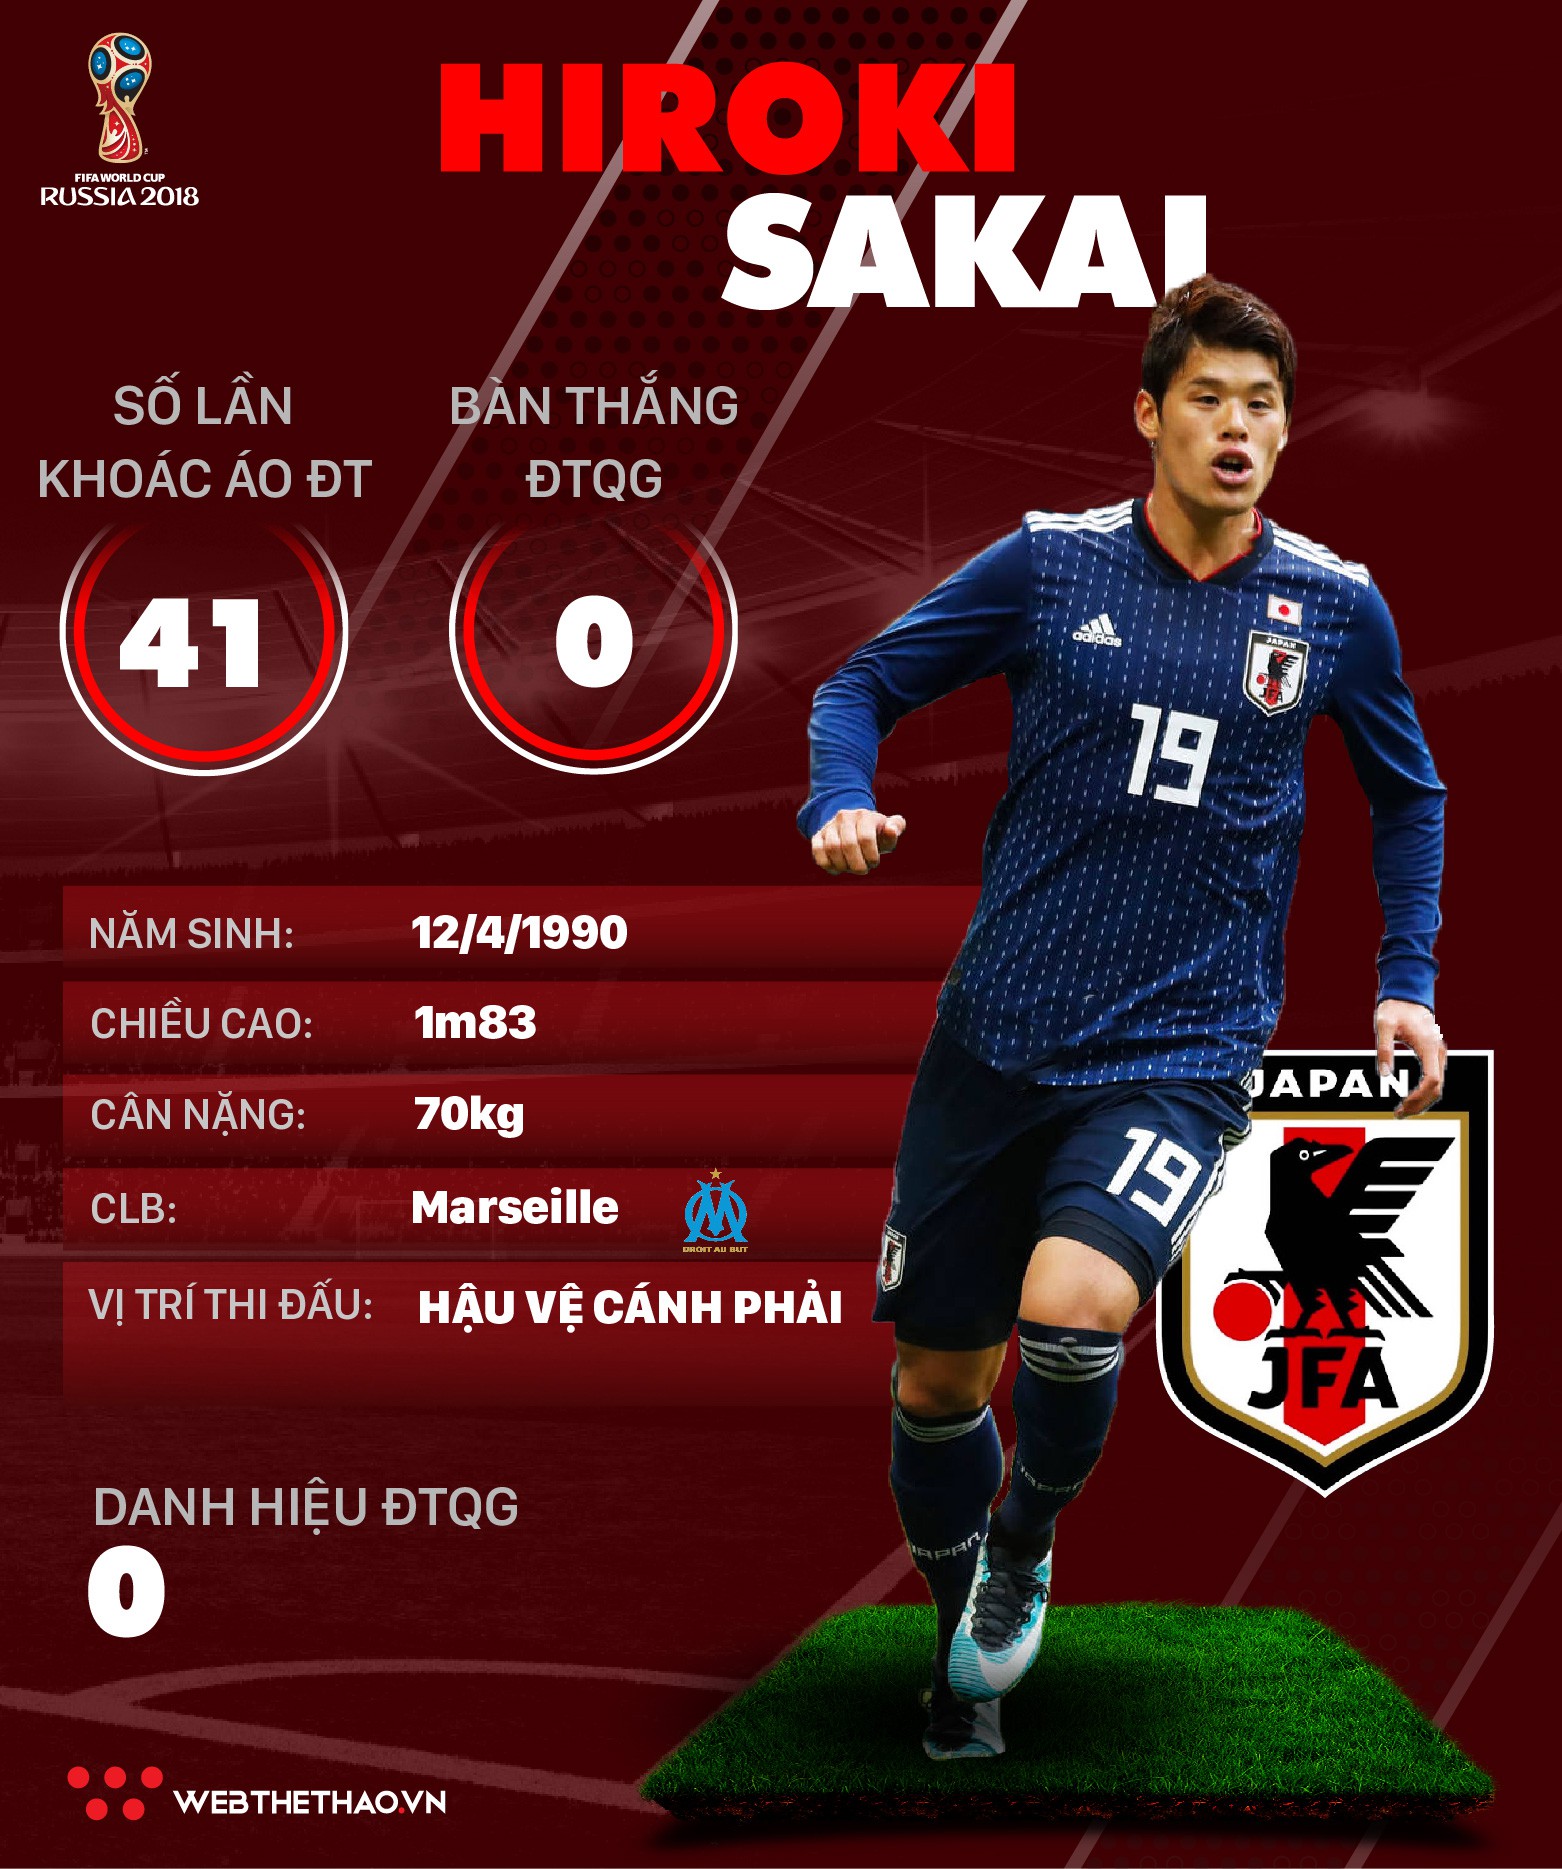 Thông tin cầu thủ Hiroki Sakai của ĐT Nhật Bản dự World Cup 2018 - Ảnh 1.